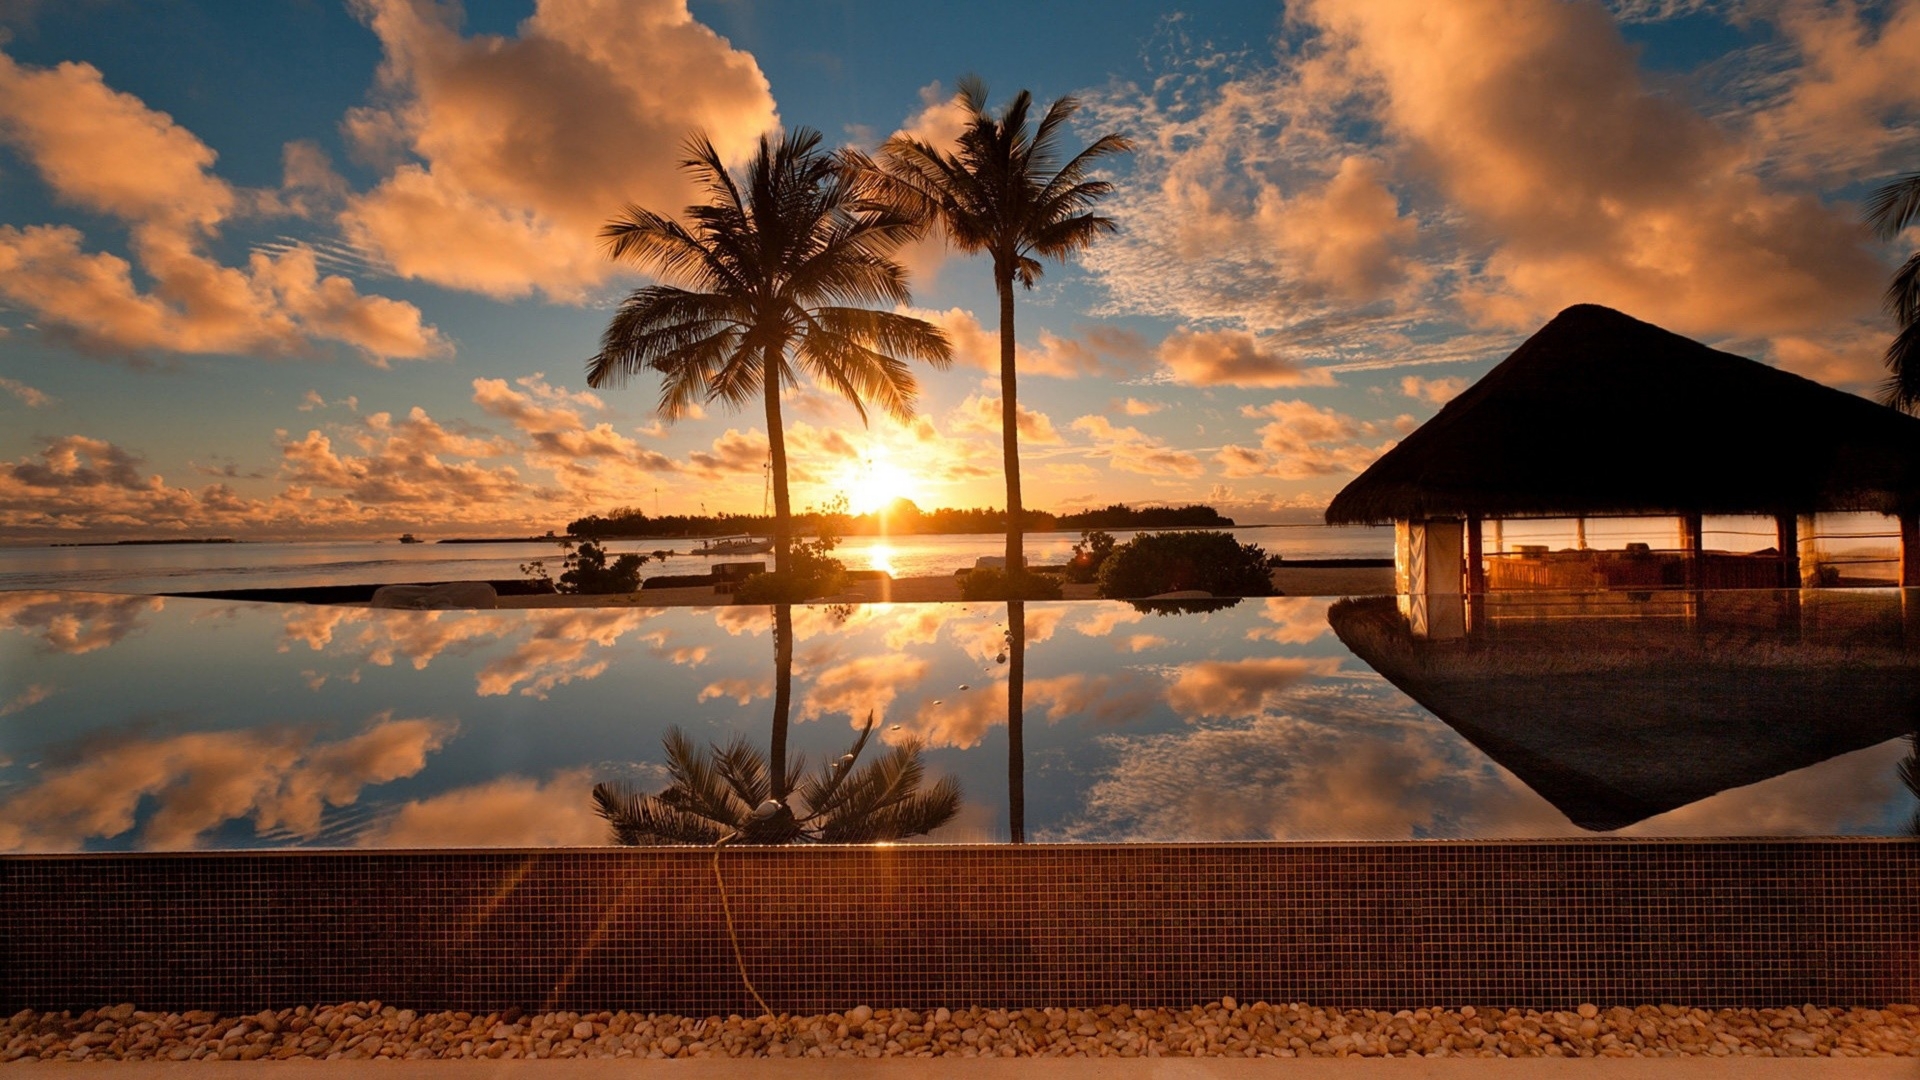 Piscine - Bali - coucher de soleil.jpg